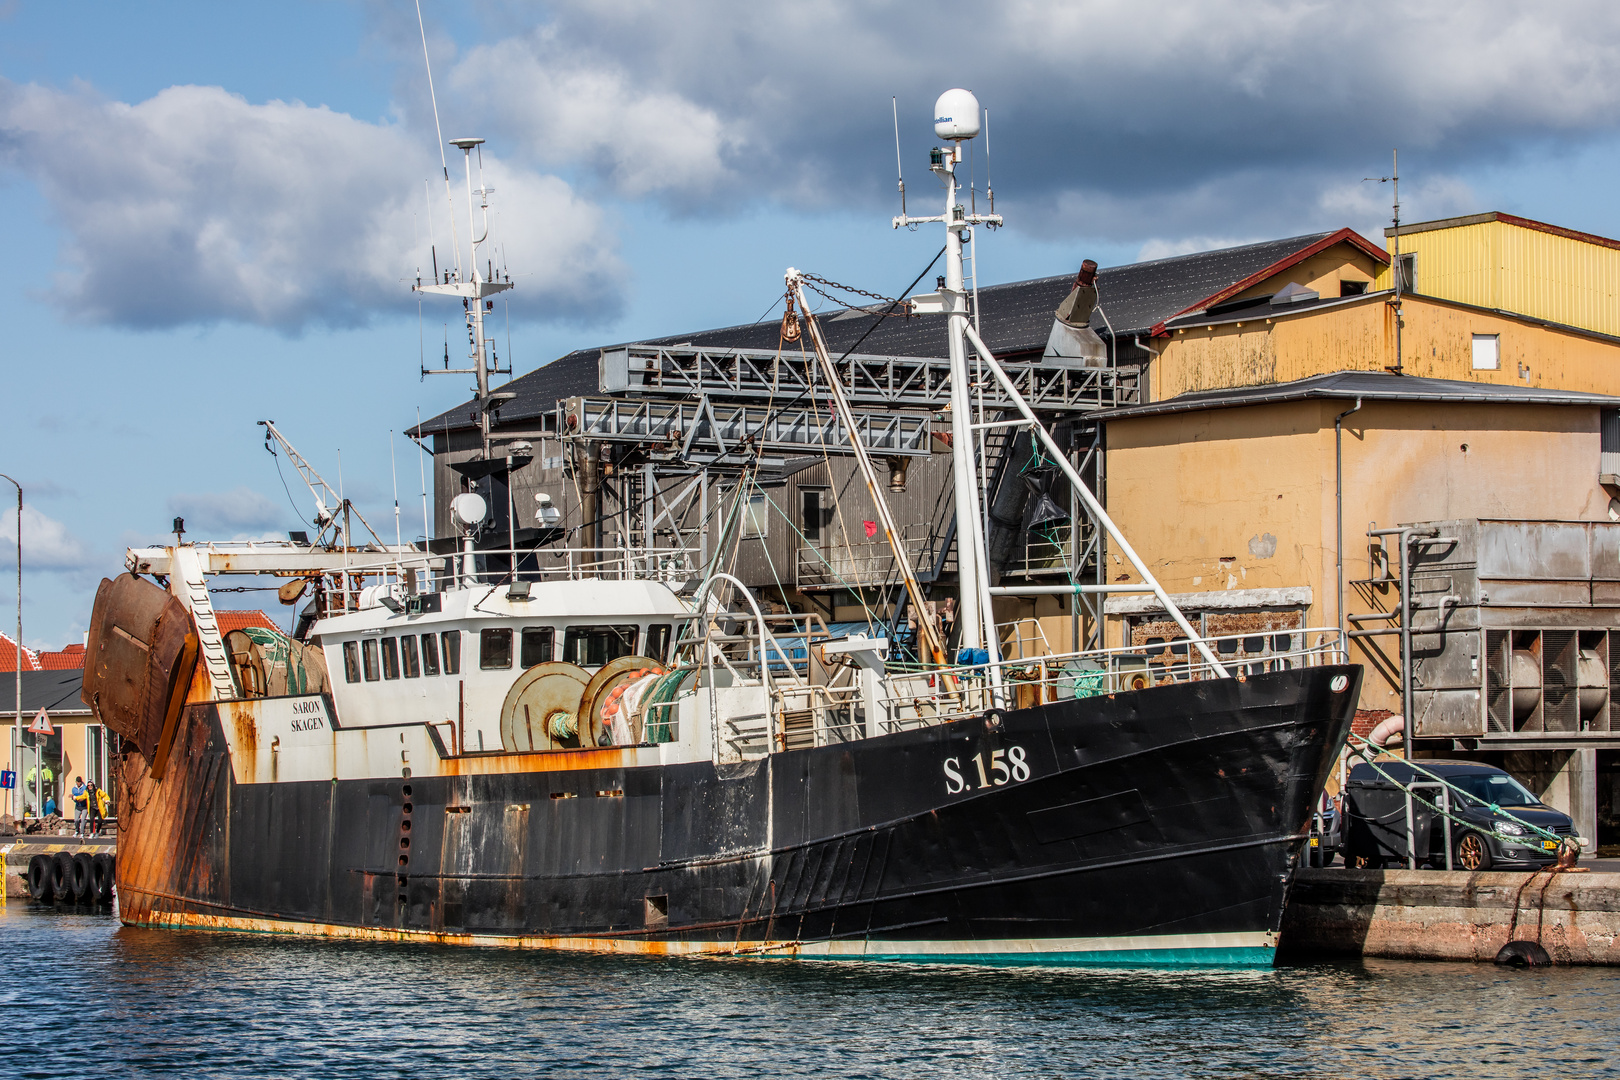 S.158 - SARON im Hafen von Skagen